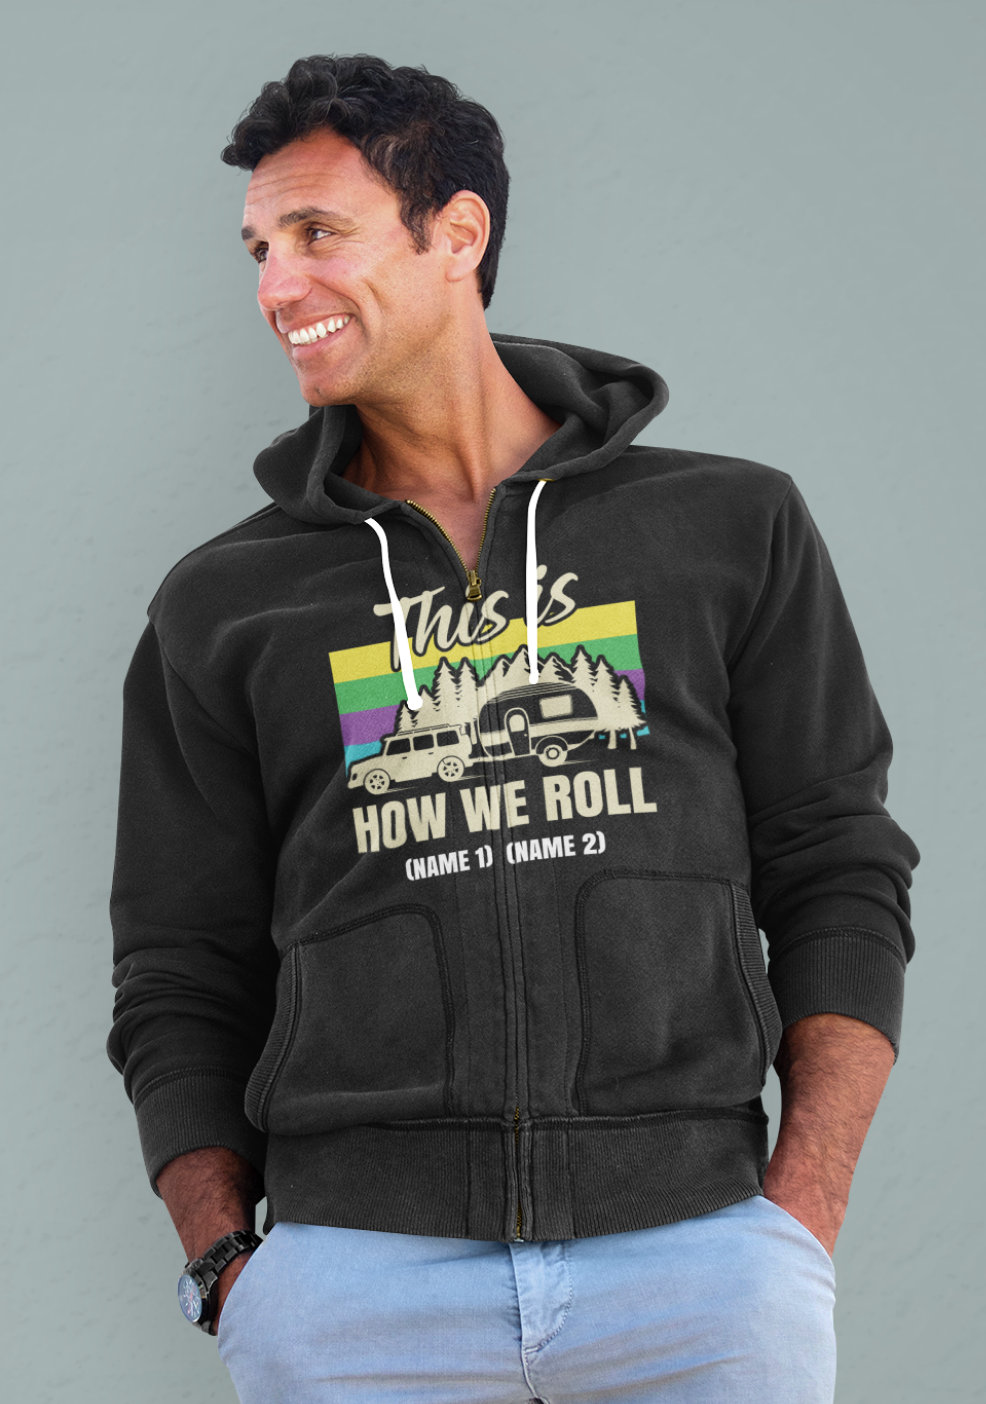 How we roll; Full-zip hoodie sweatshirt